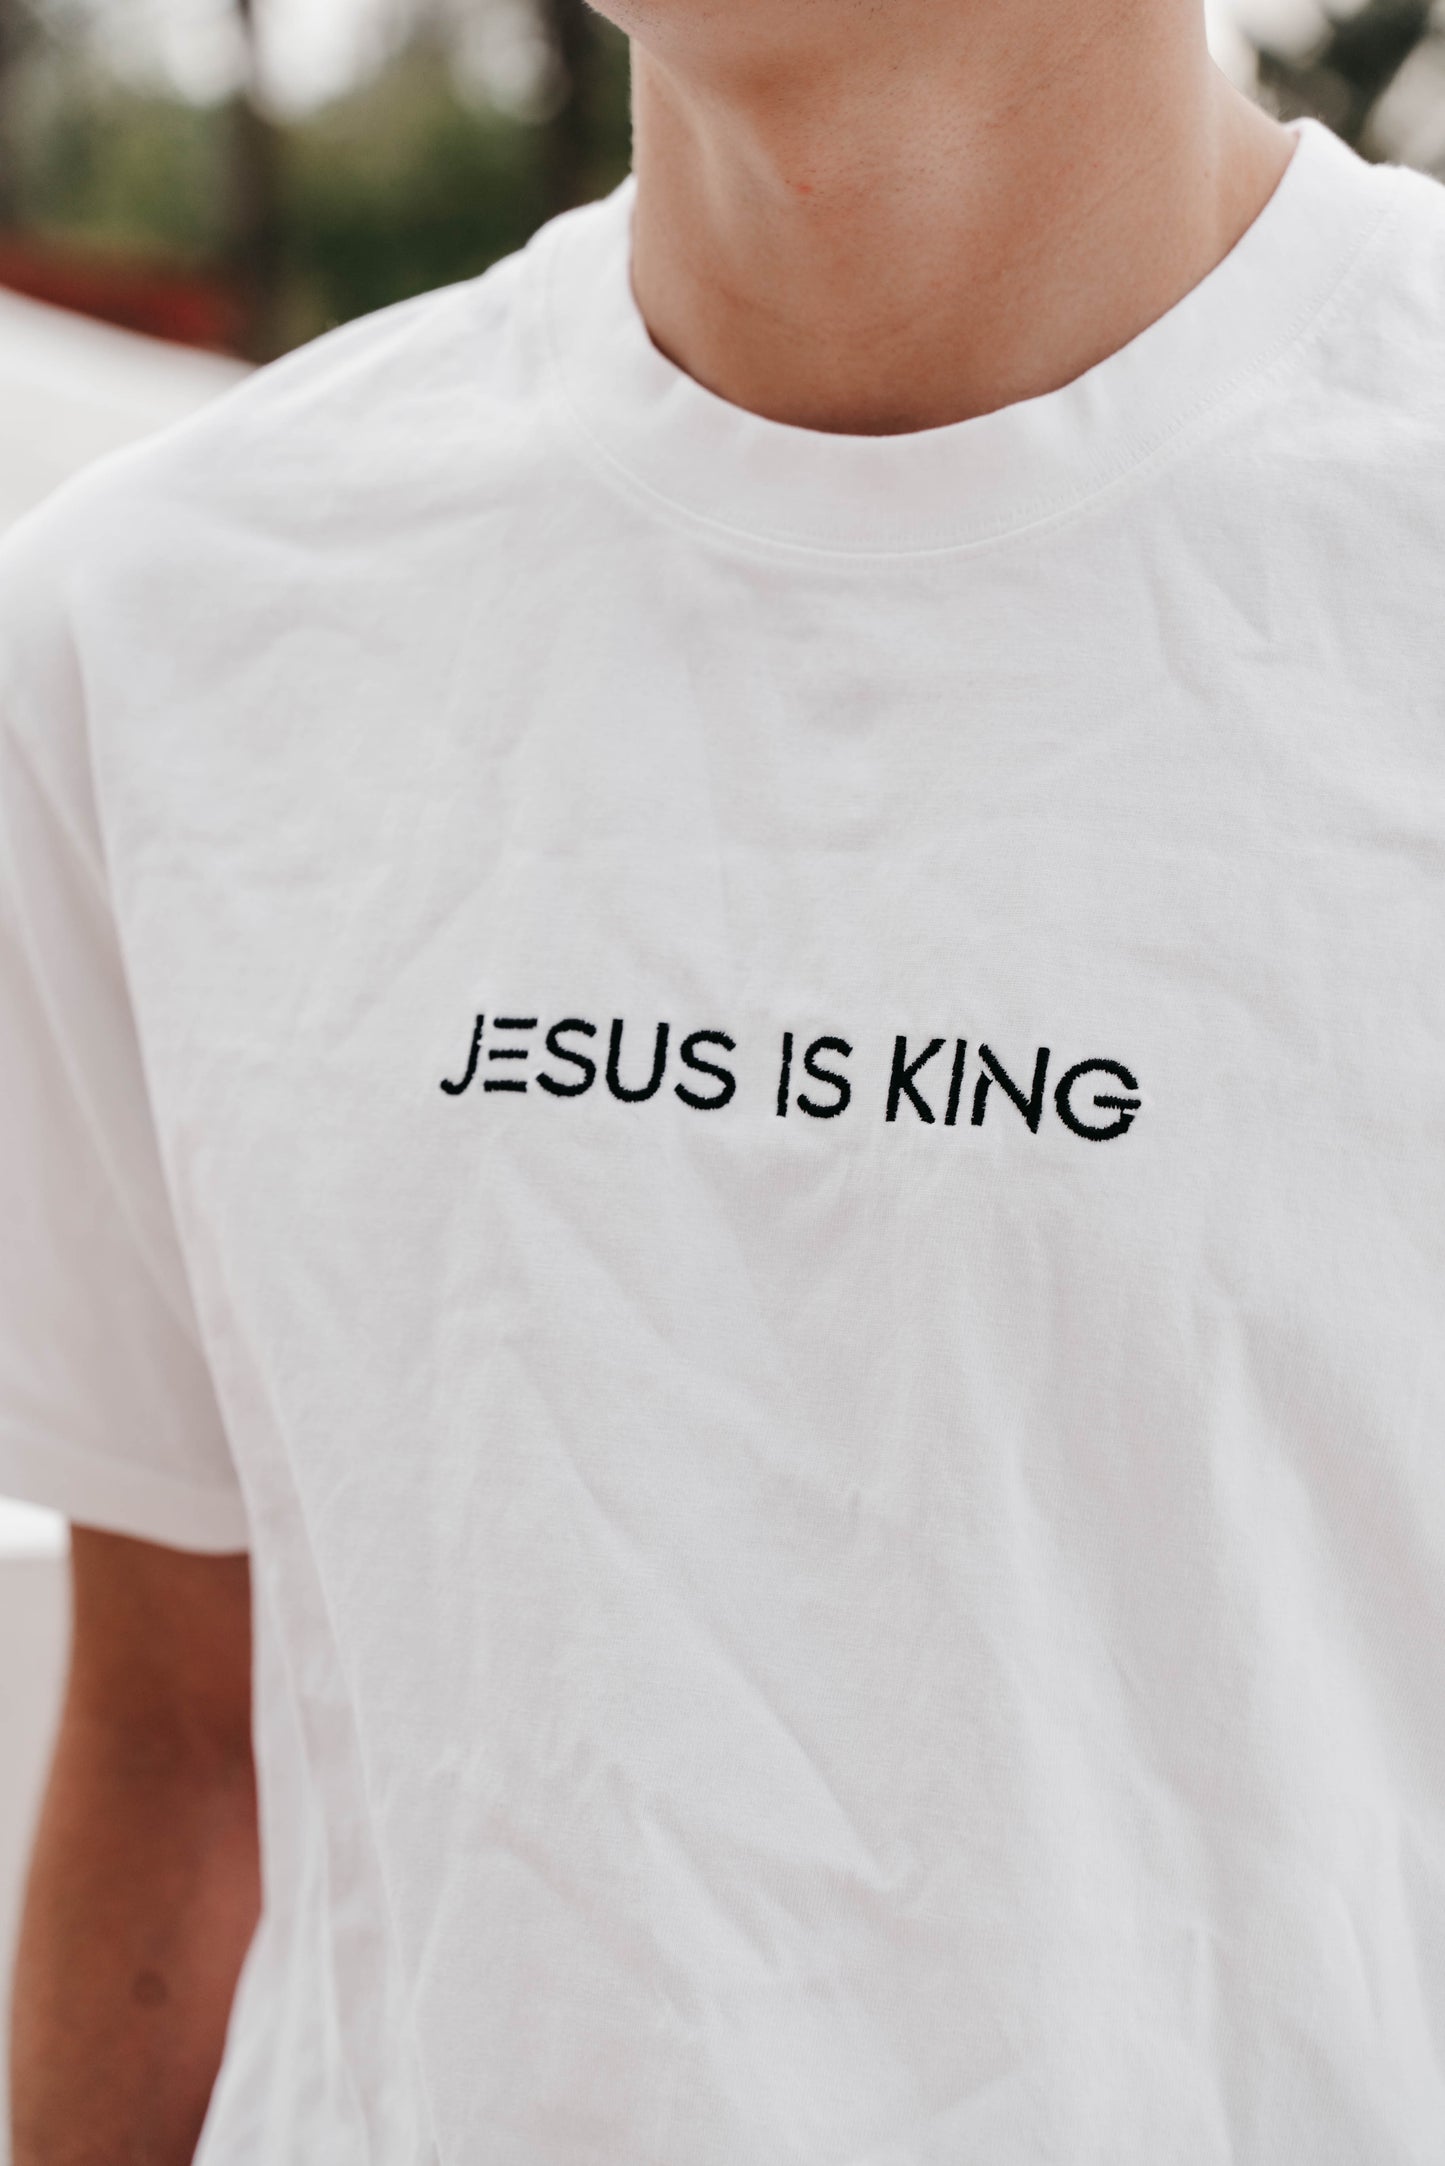 " JESUS IS KING " Men's White Short Sleeve